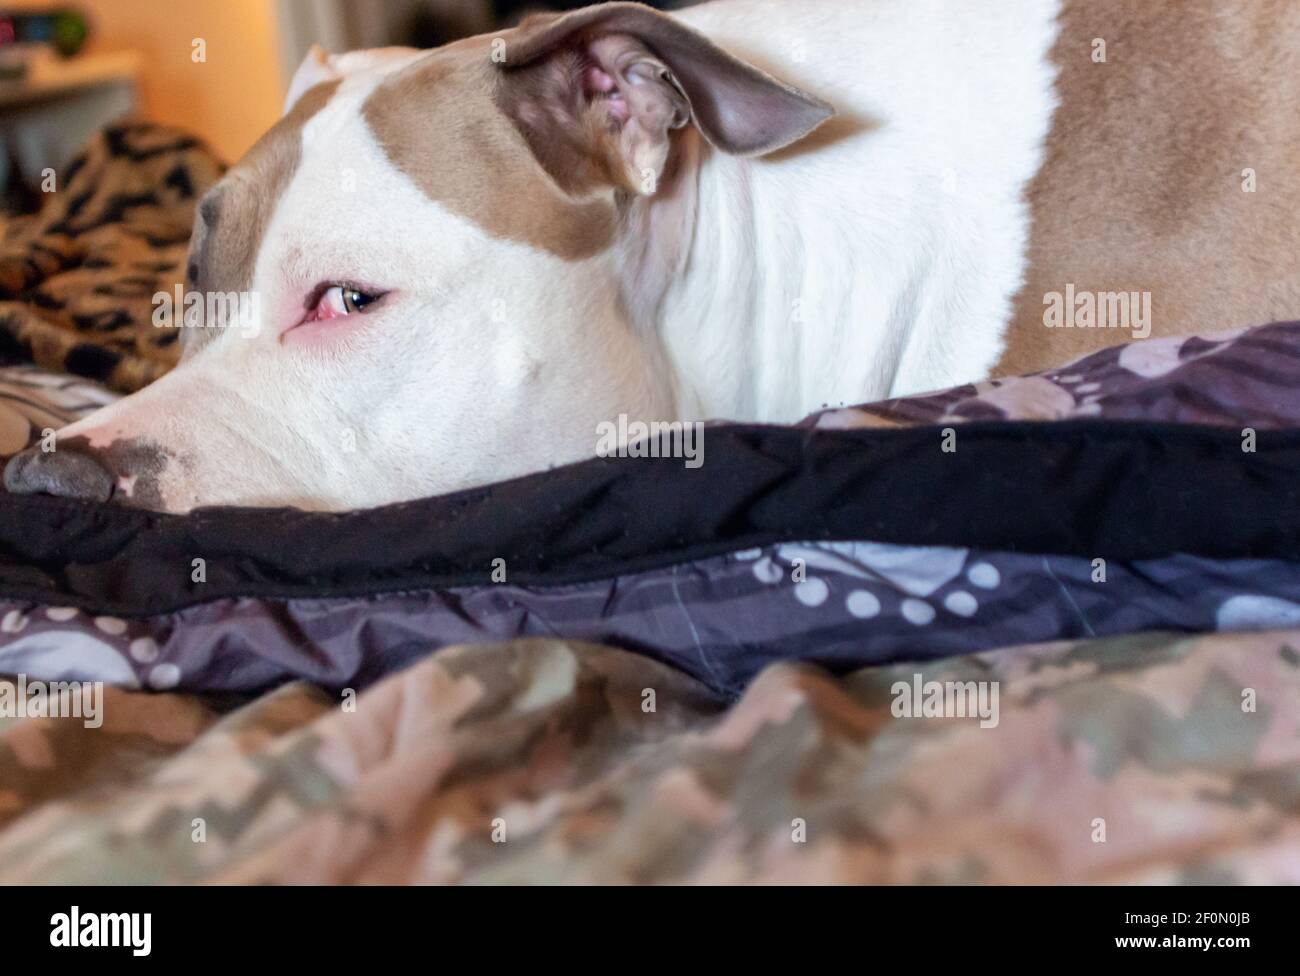 Un chien pitbull de race mixte (American Staffordshire Pit Bull Terrier et American Pit Bull Terrier) (Canis lupus familiaris) donne un œil latéral. Banque D'Images